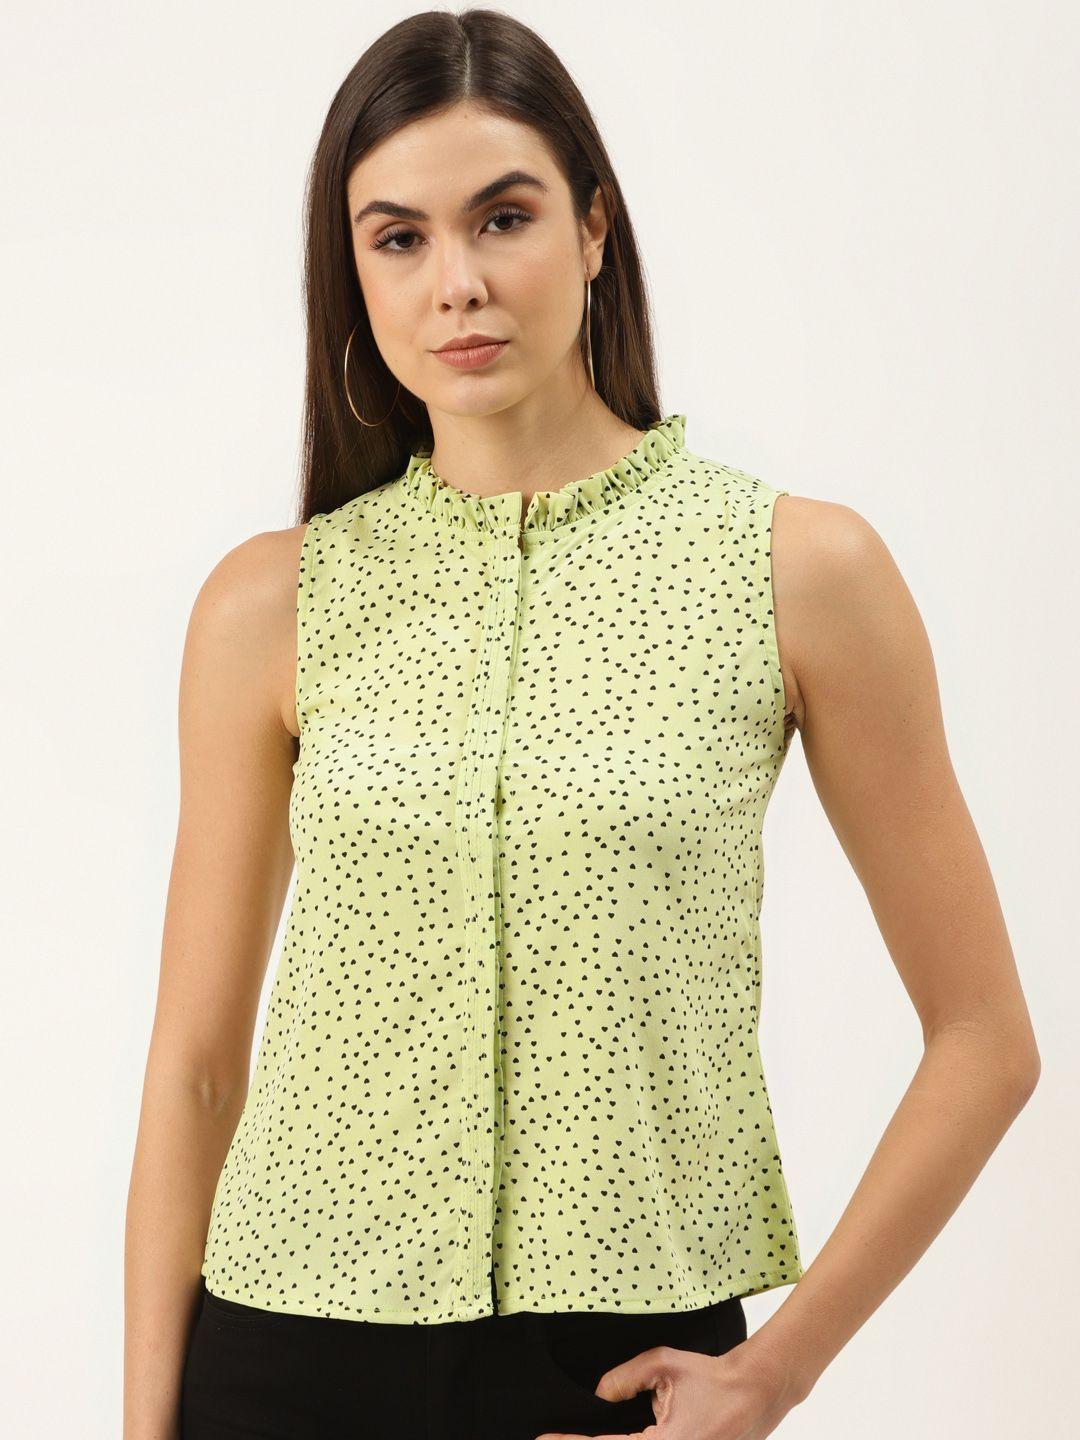 zizo by namrata bajaj women lime green & black hearts print shirt style top